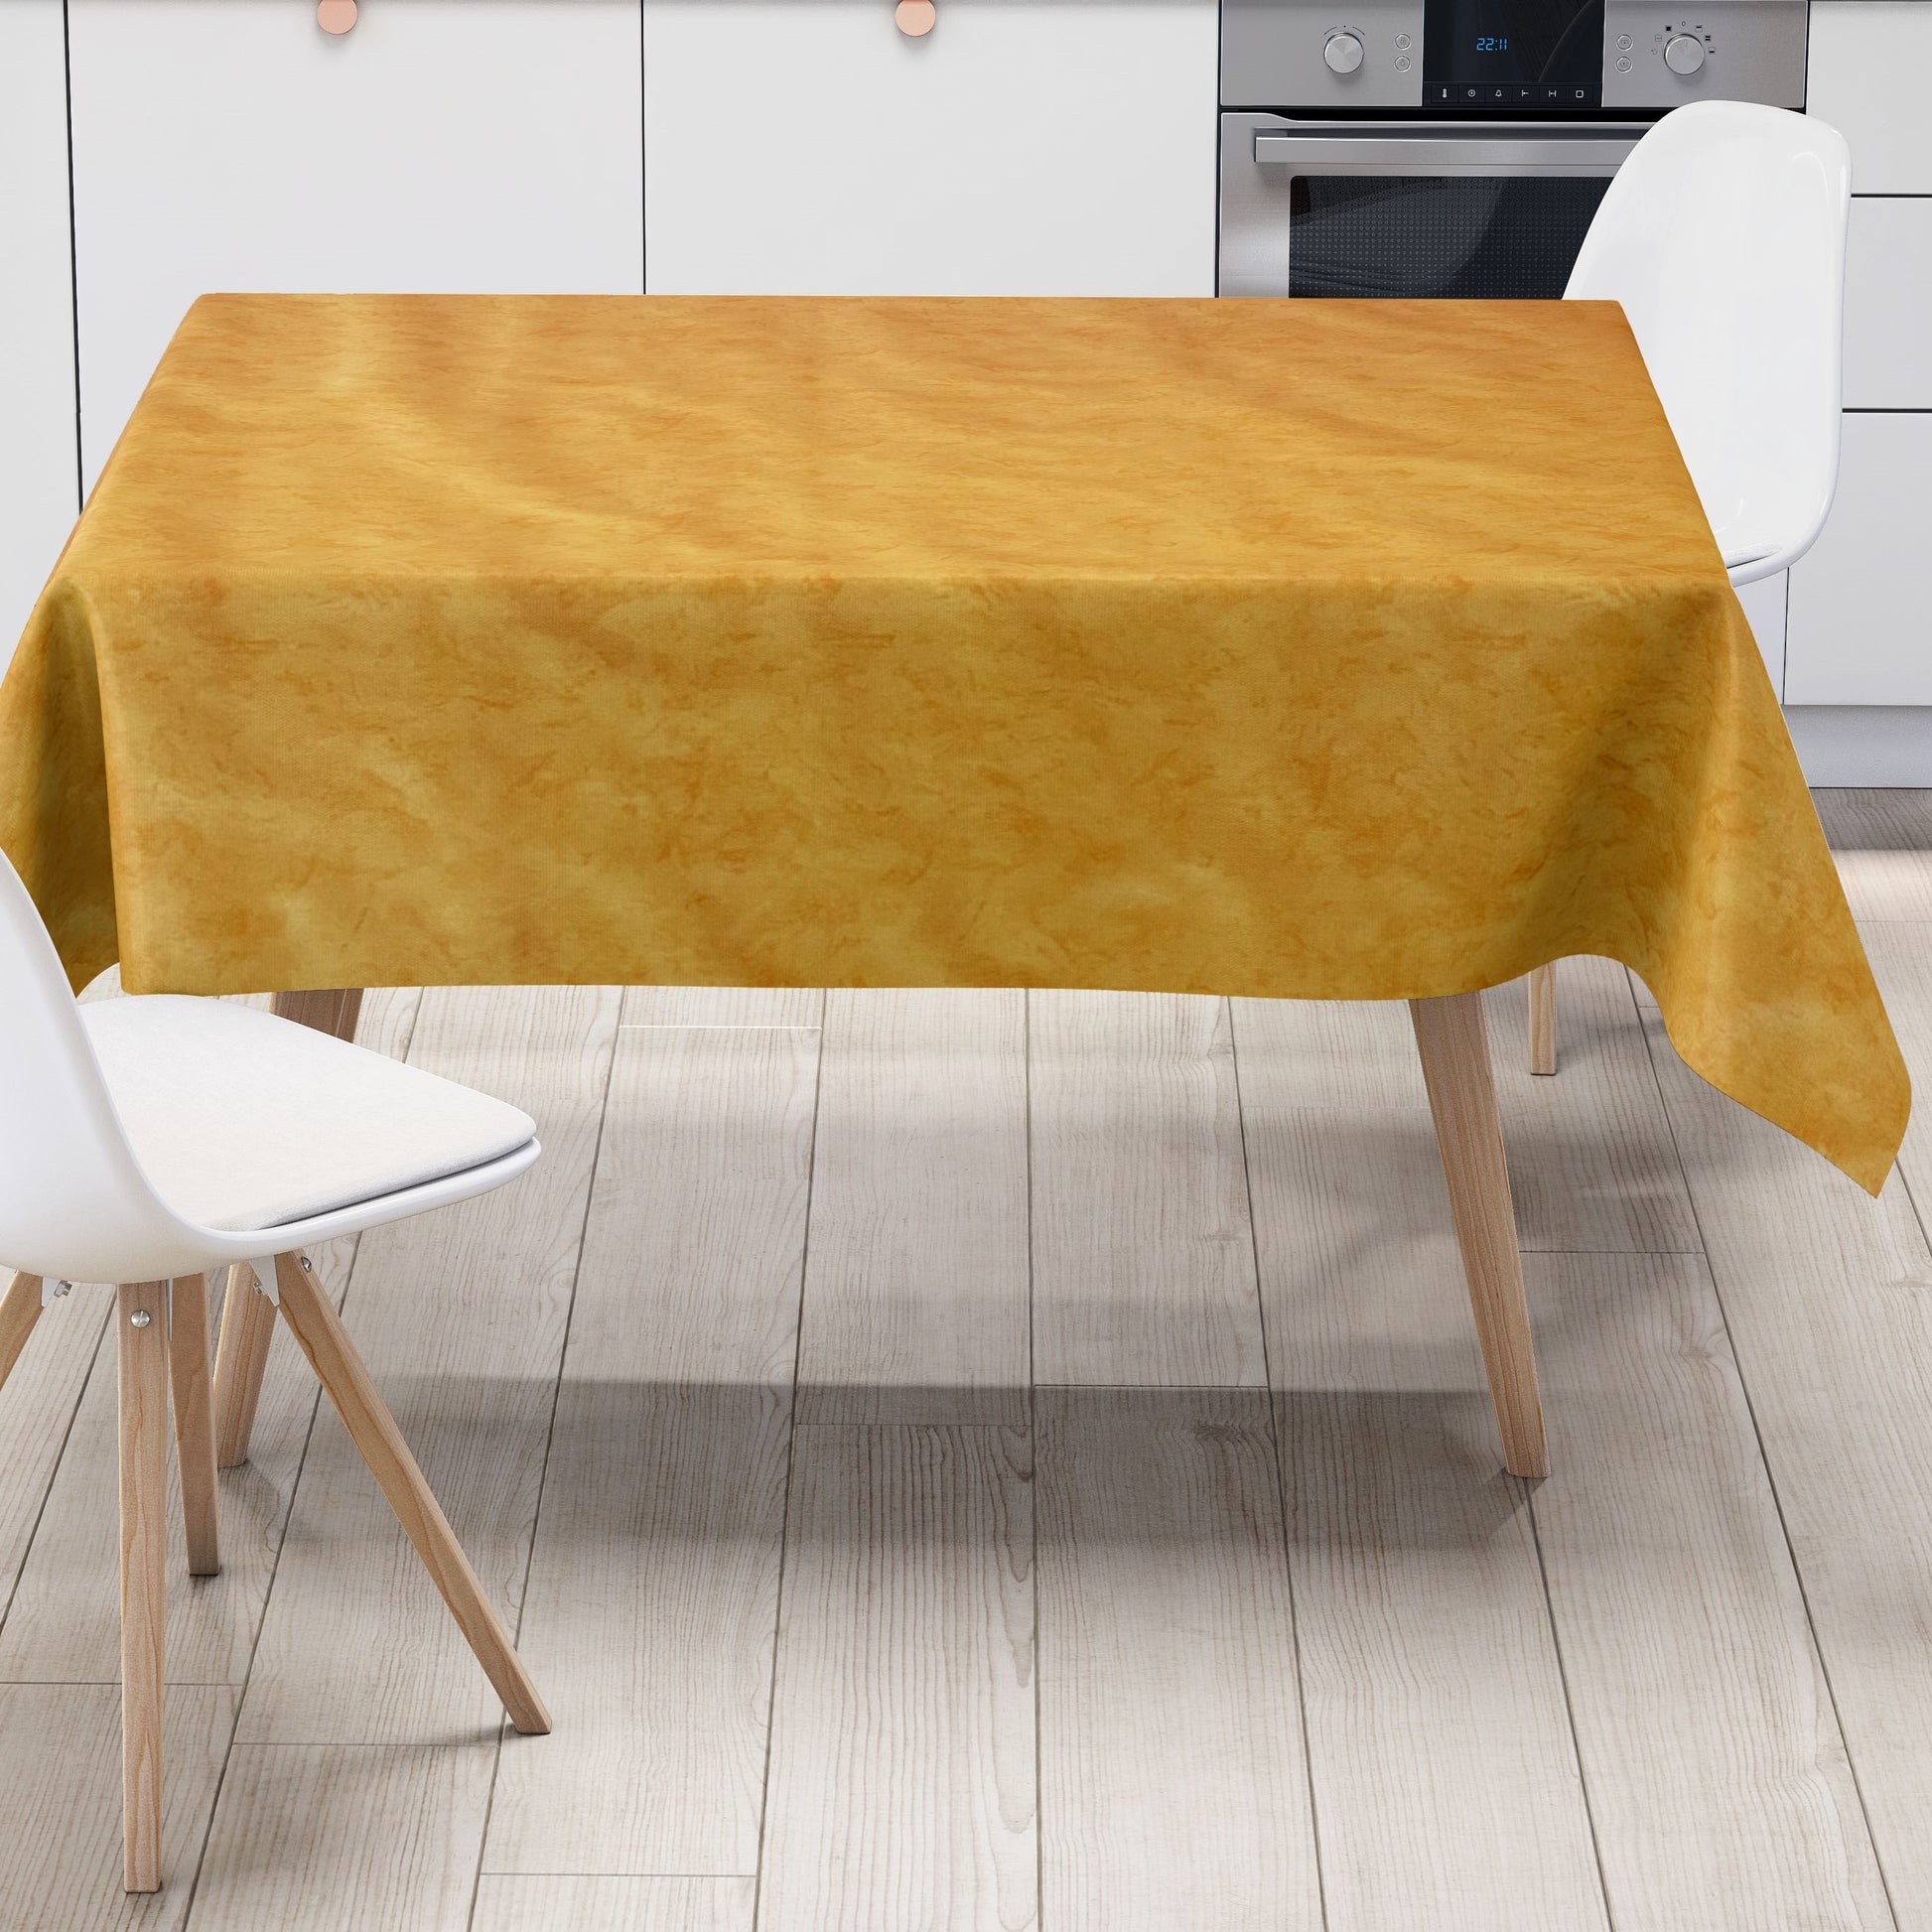 Wachstuch Tischdecke C142604 marmoriert gelb orange eckig rund oval –